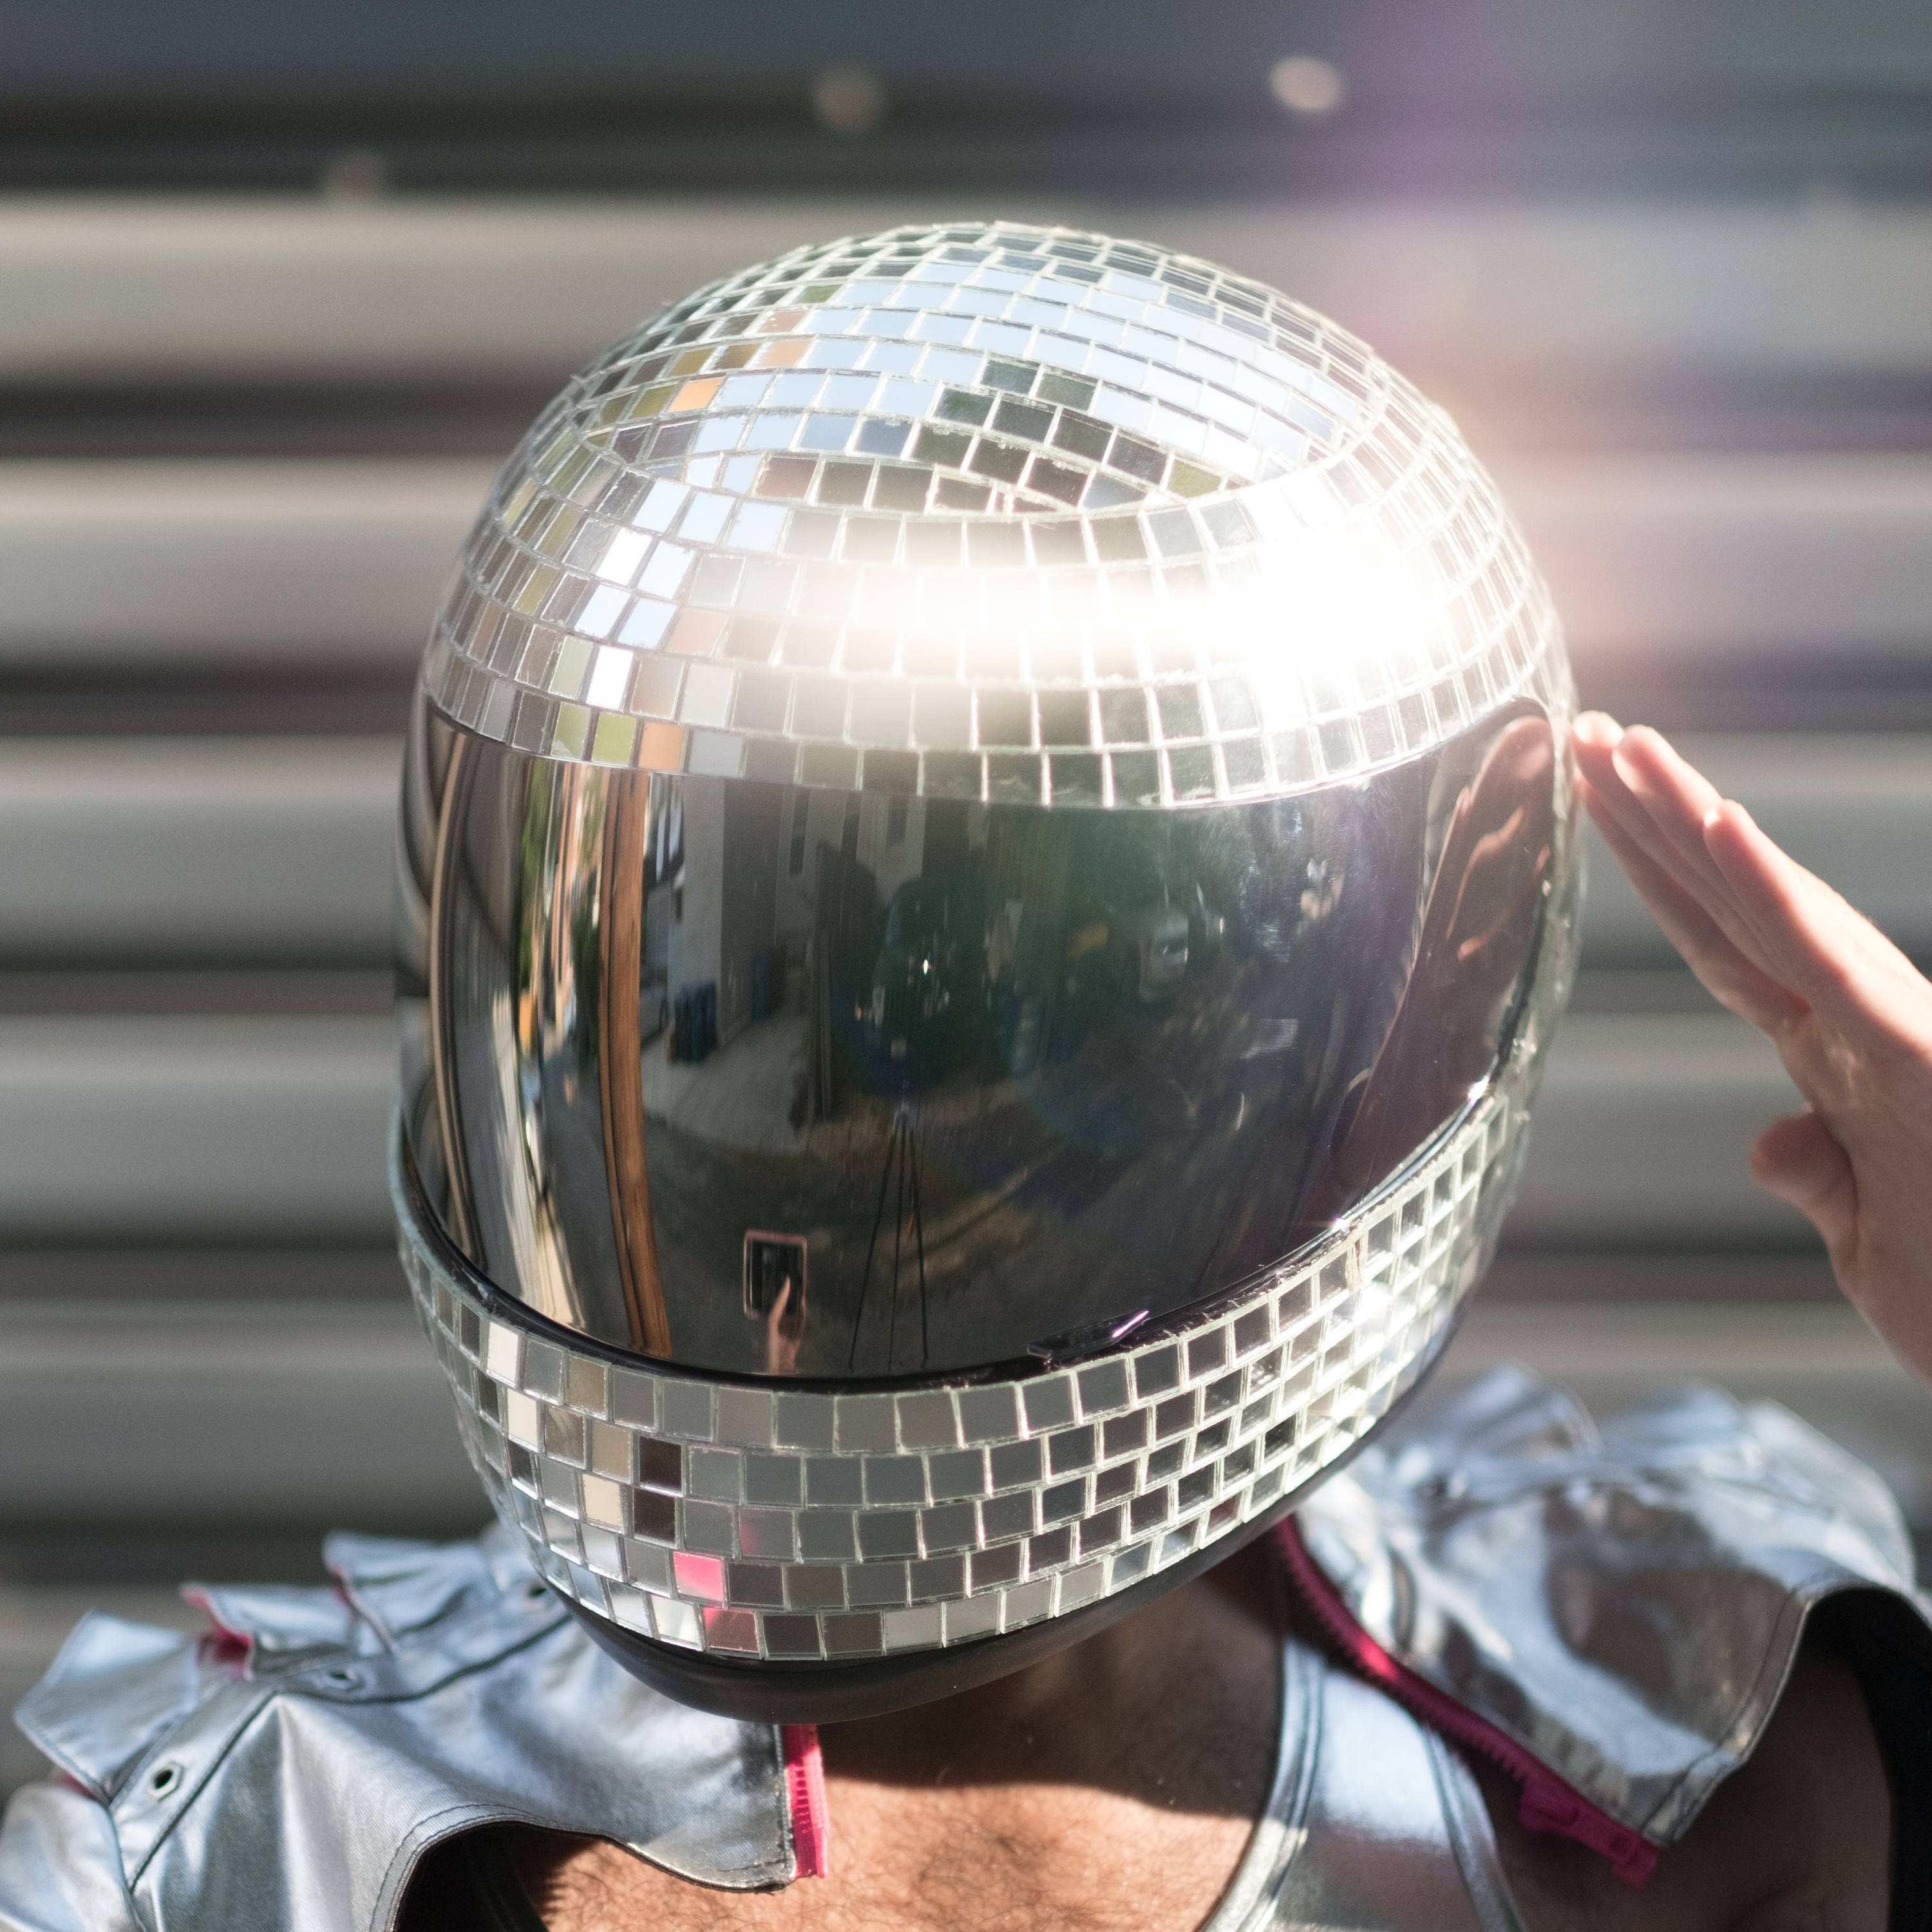 DISCO HELMET 2020 V2.0 CUSTOM Glamourous Disco Ball Mirror Tile Motorcycle  Helmet for Burning Man, Festivals, Raves, and Everyday Dancing 